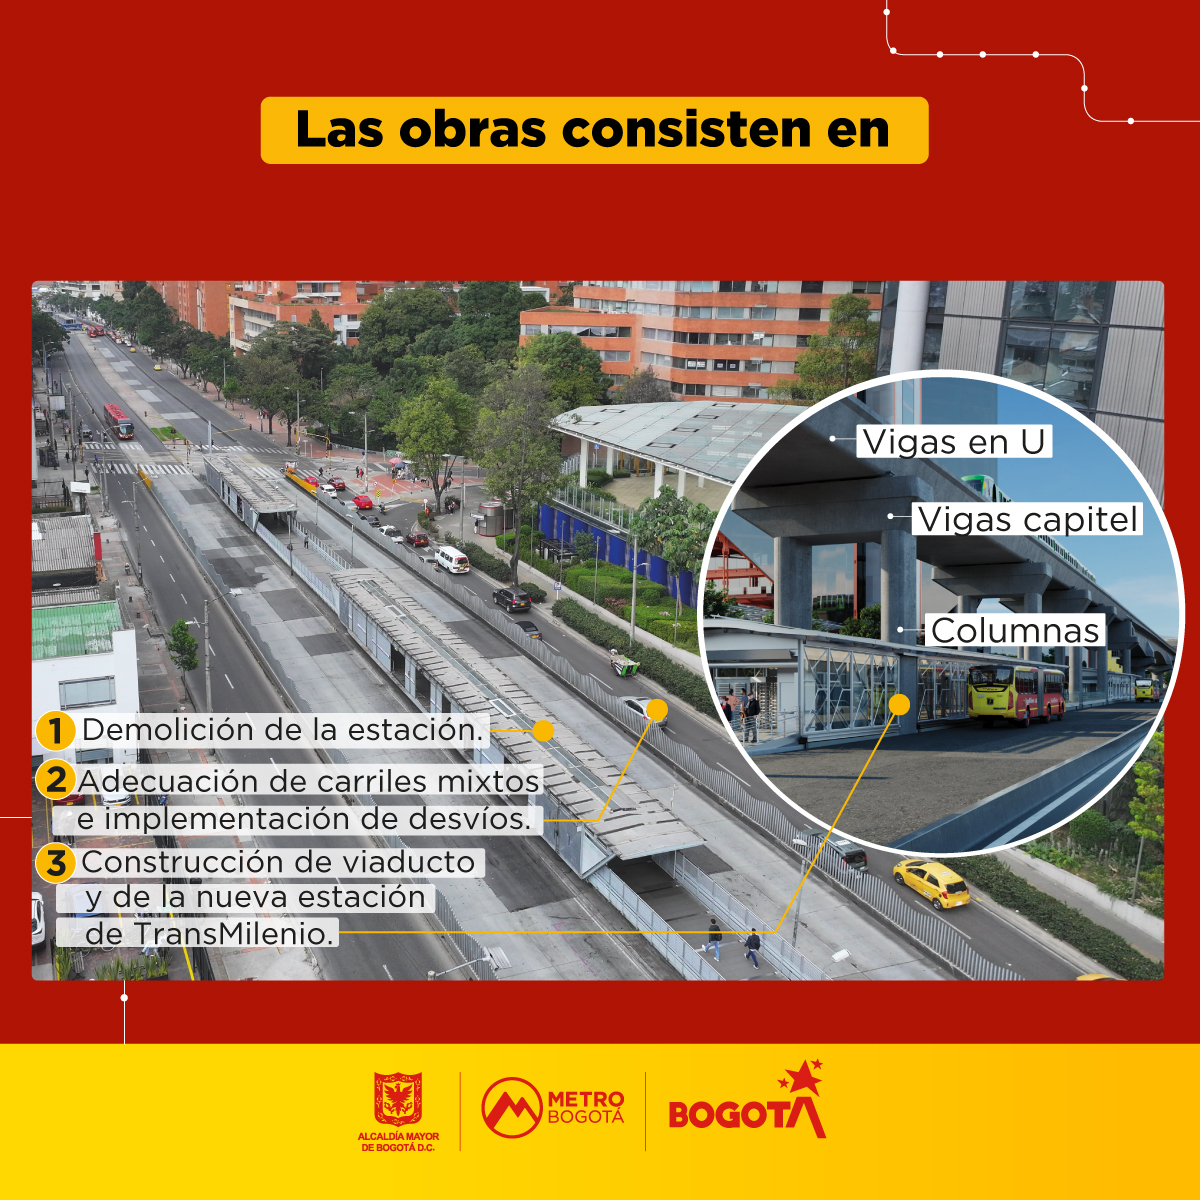 Avanza la construcción del viaducto de la #PLMB 🚝 en la av. Caracas entre las calles 26 y 28 📍. #MetroTeAcompaña en los cierres que se harán del carril oriental en la calzada occidental mixta para cargue y descargue en horario nocturno 🌙 (12:30 a. m. a 03:30 a. m.)